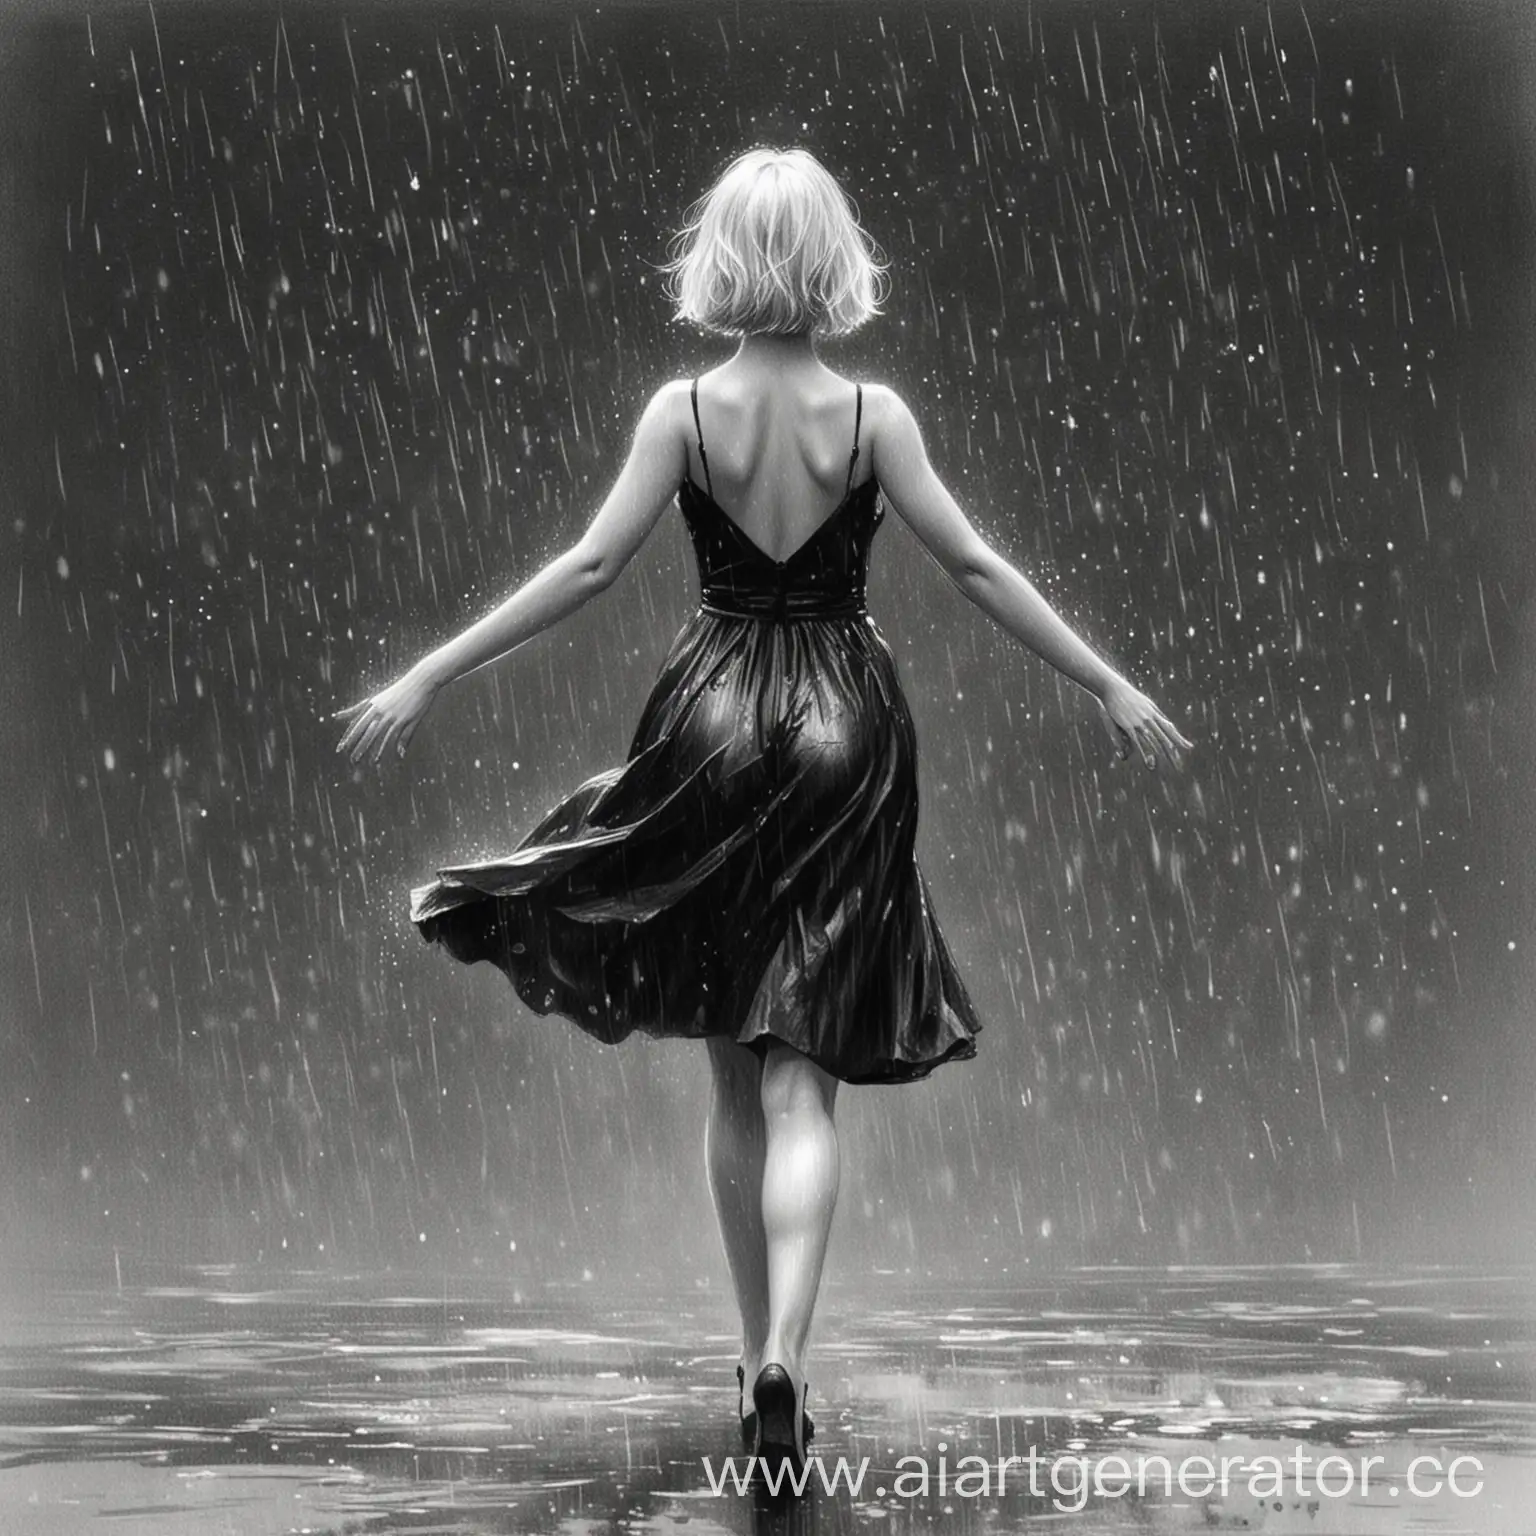 Девушка, черное вечернее платье на ней, она танцует под дождем, она повернута спиной, волосы у нее белые и прическа каре, руки слегка наверх, рисунок чб и выполнен карандашом, эскиз